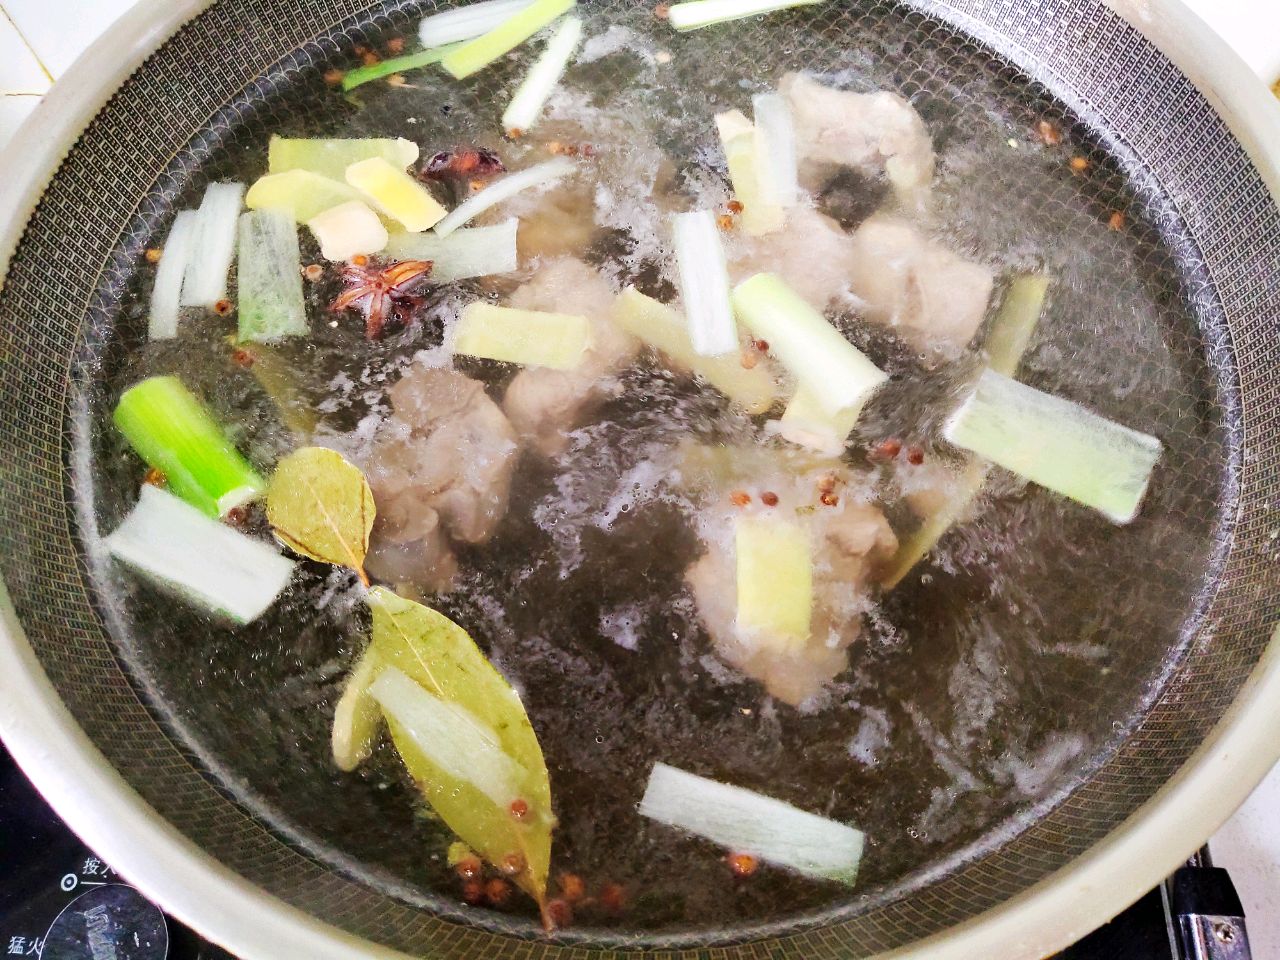 脊骨酸菜汤,脊骨酸菜汤的家常做法 - 美食杰脊骨酸菜汤做法大全